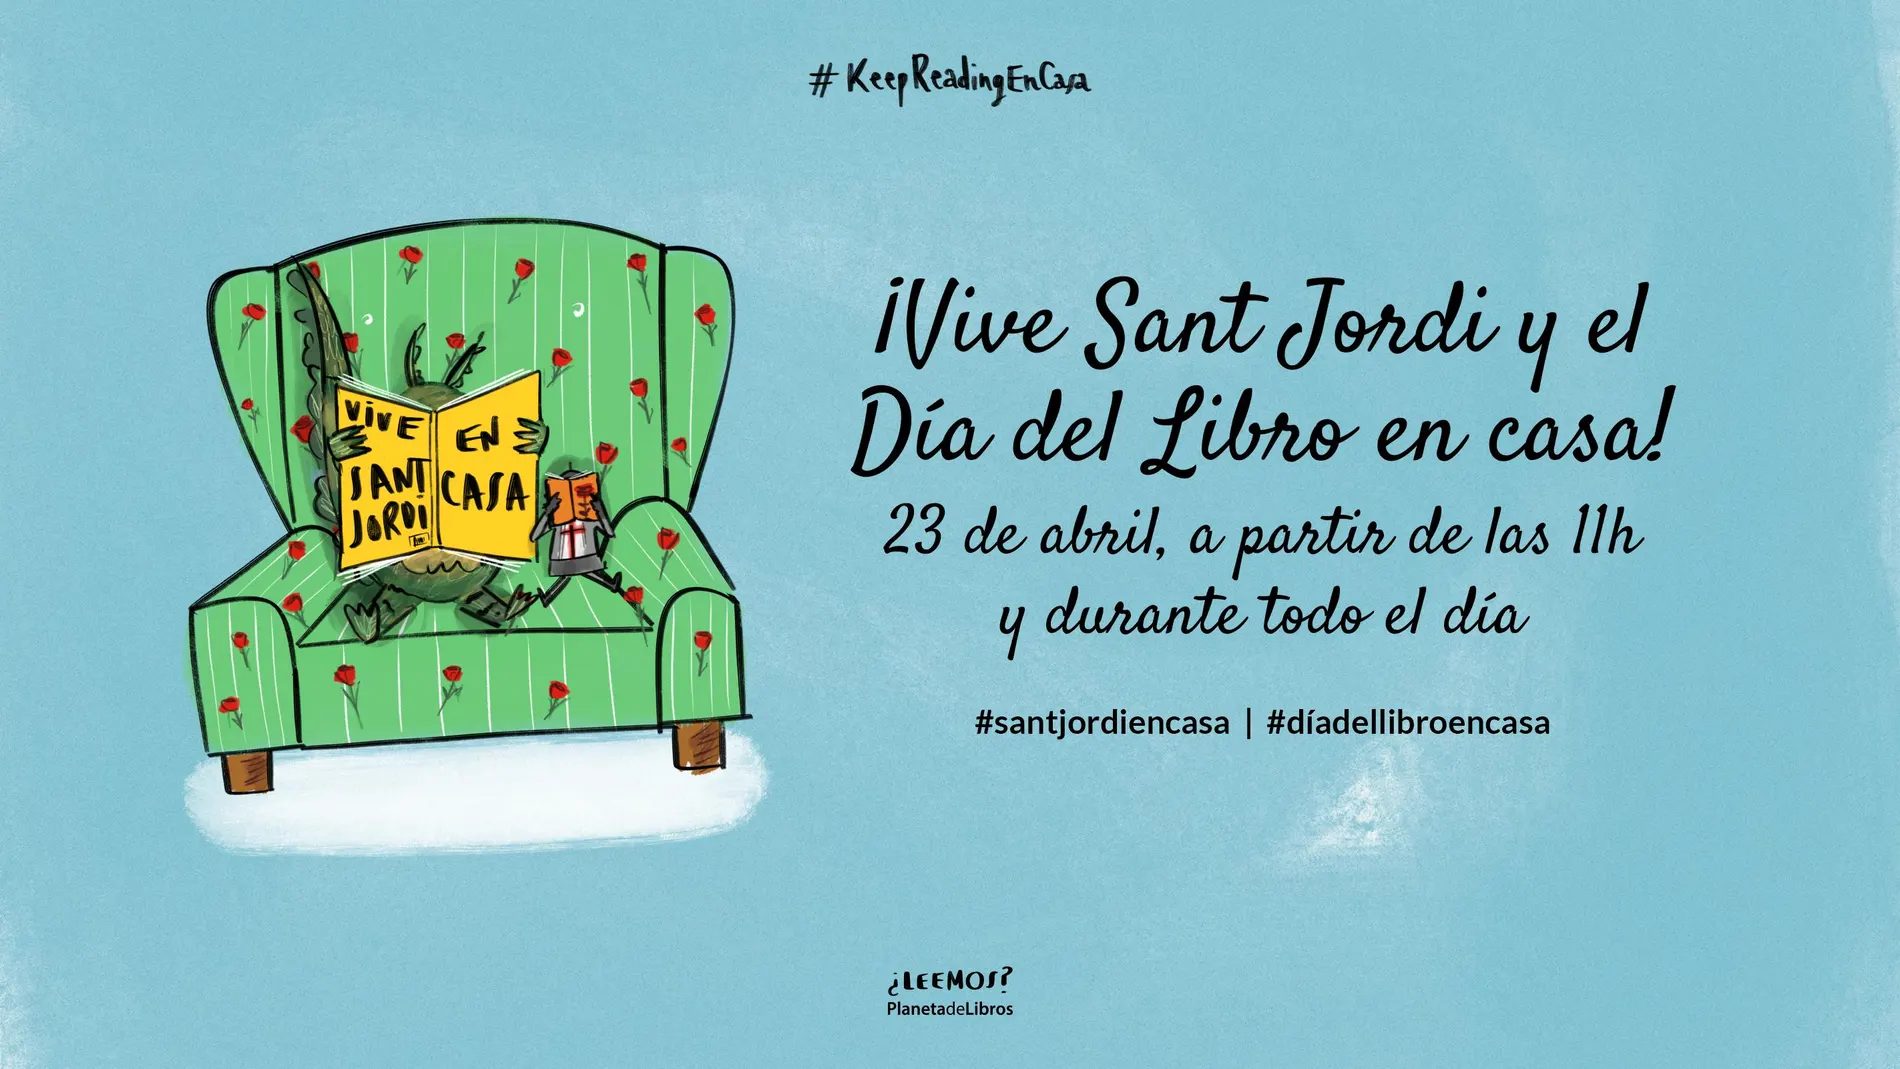 Planeta organiza una charla en directo con escritores para celebrar Sant Jordi y el Día del Libro